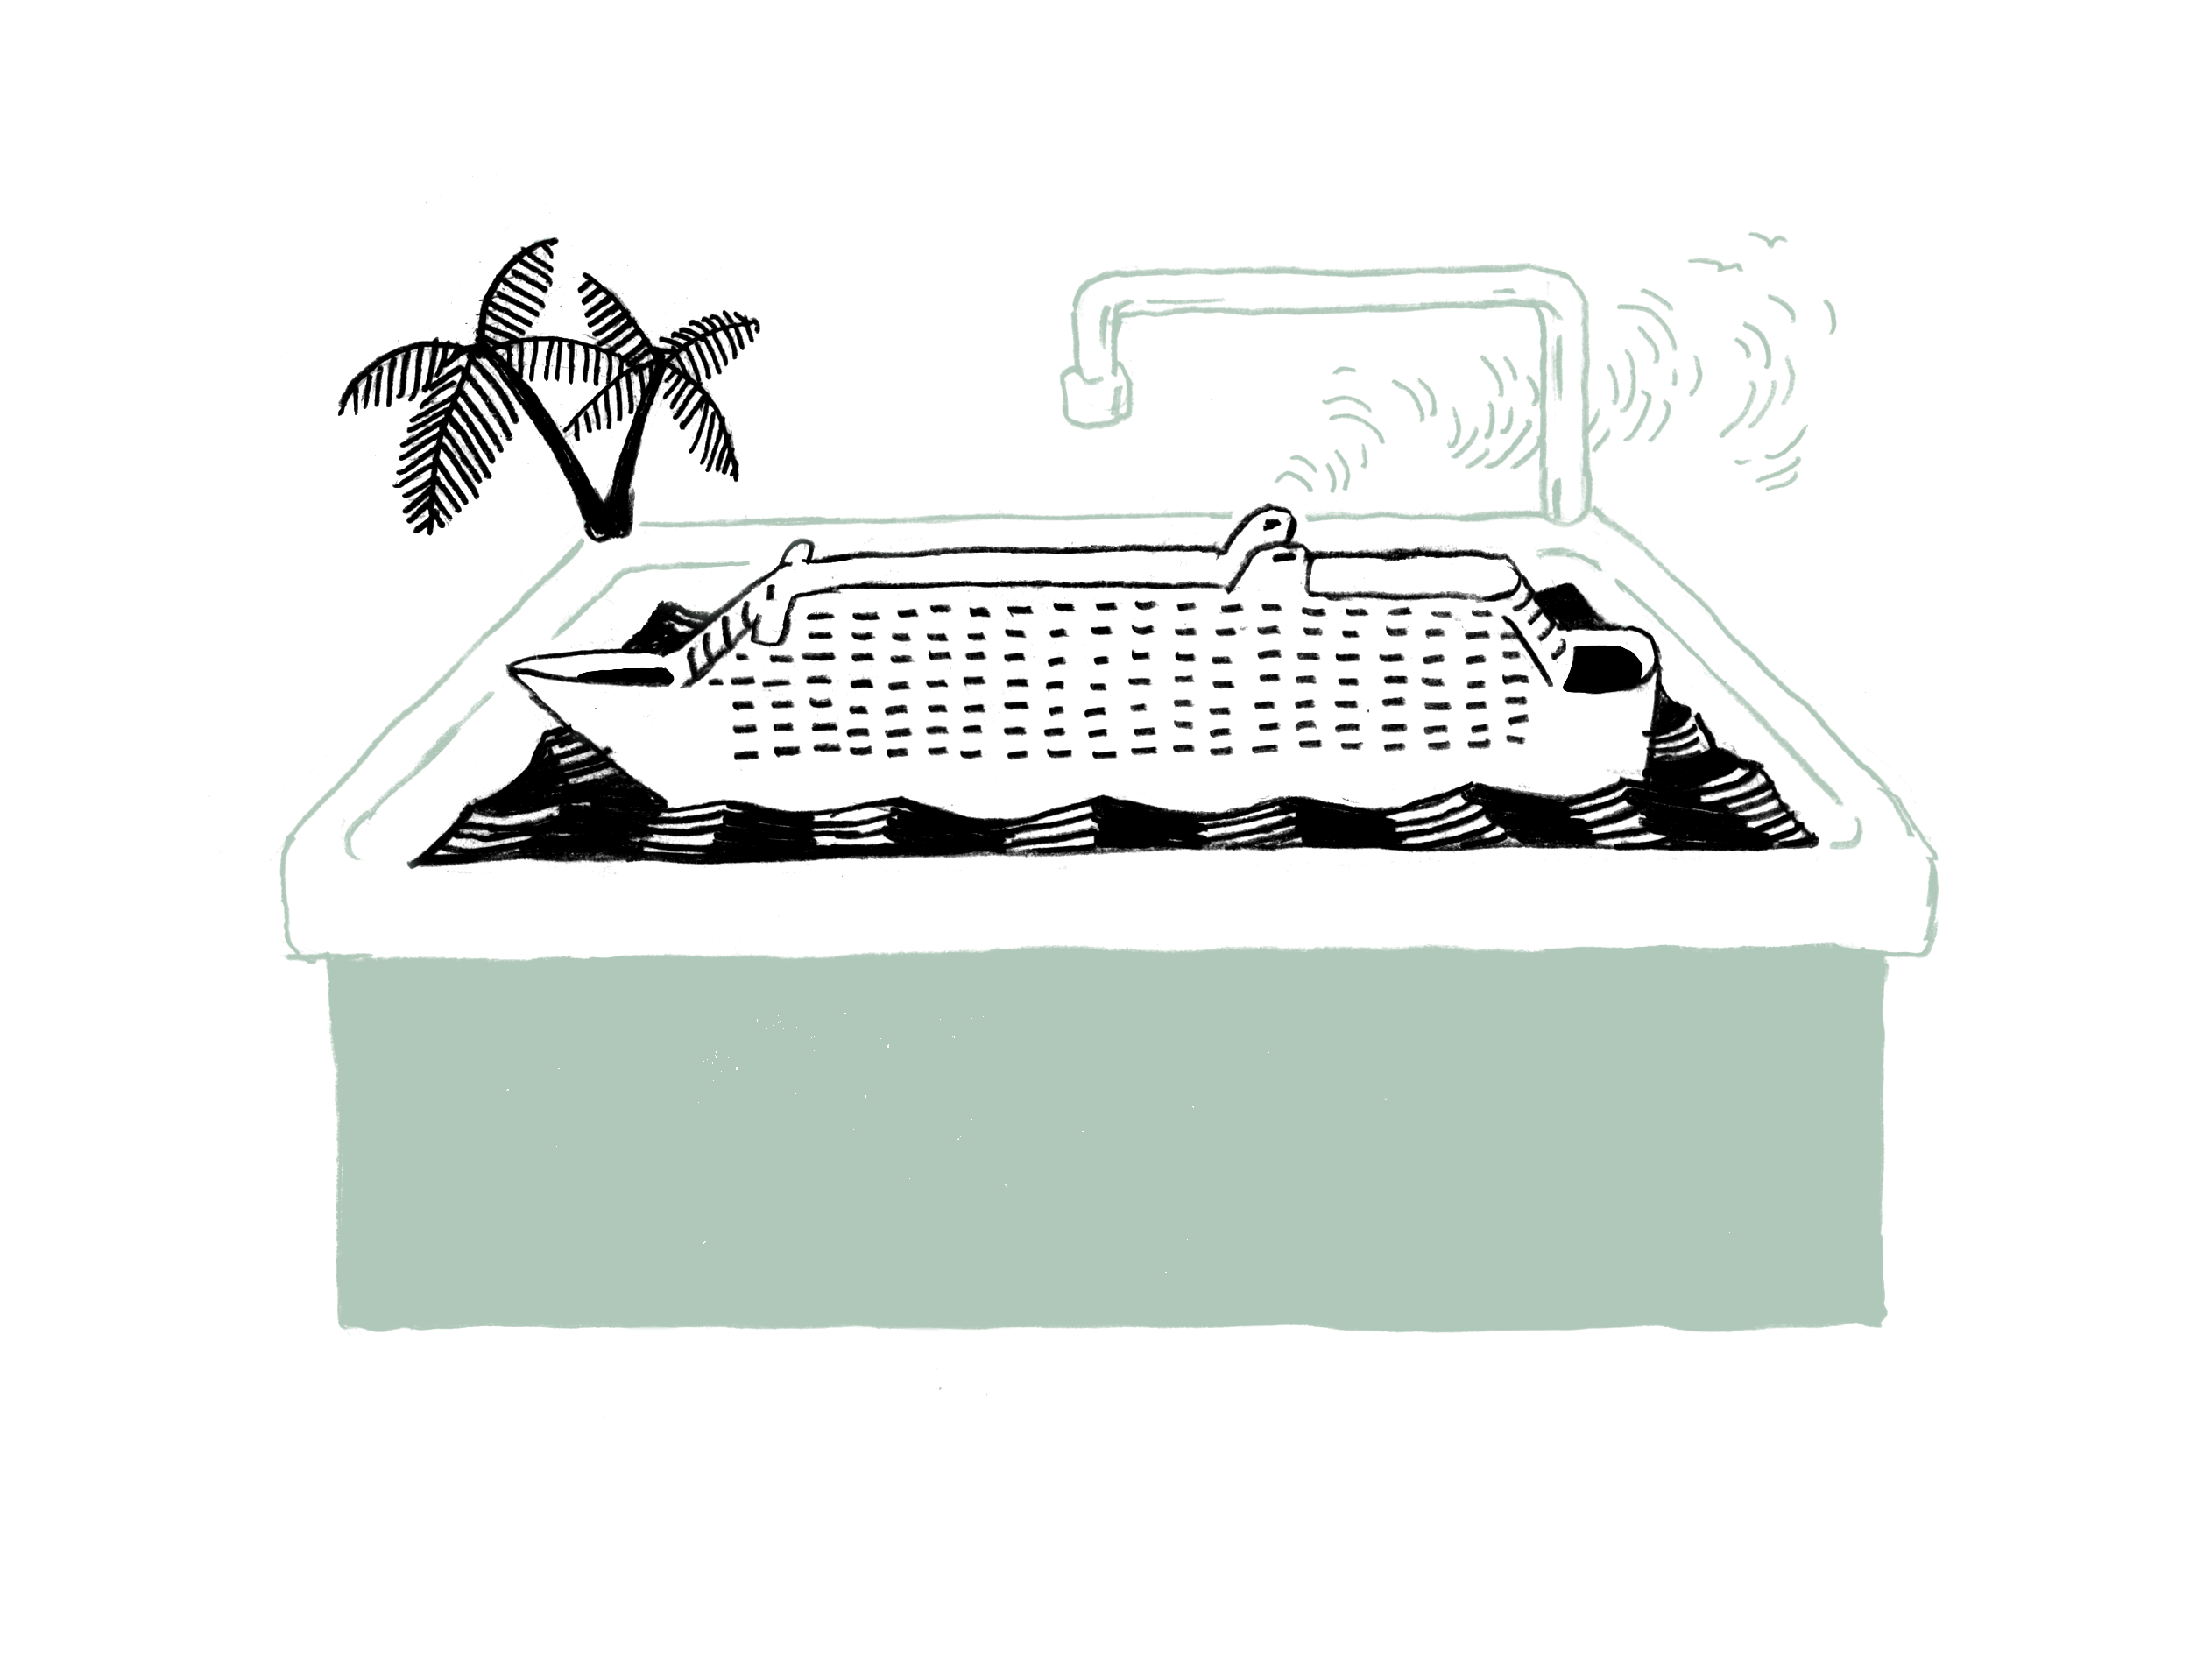 Illustration eines Kreuzfahrtschiffes, das in einer Badewanne schwimmt.